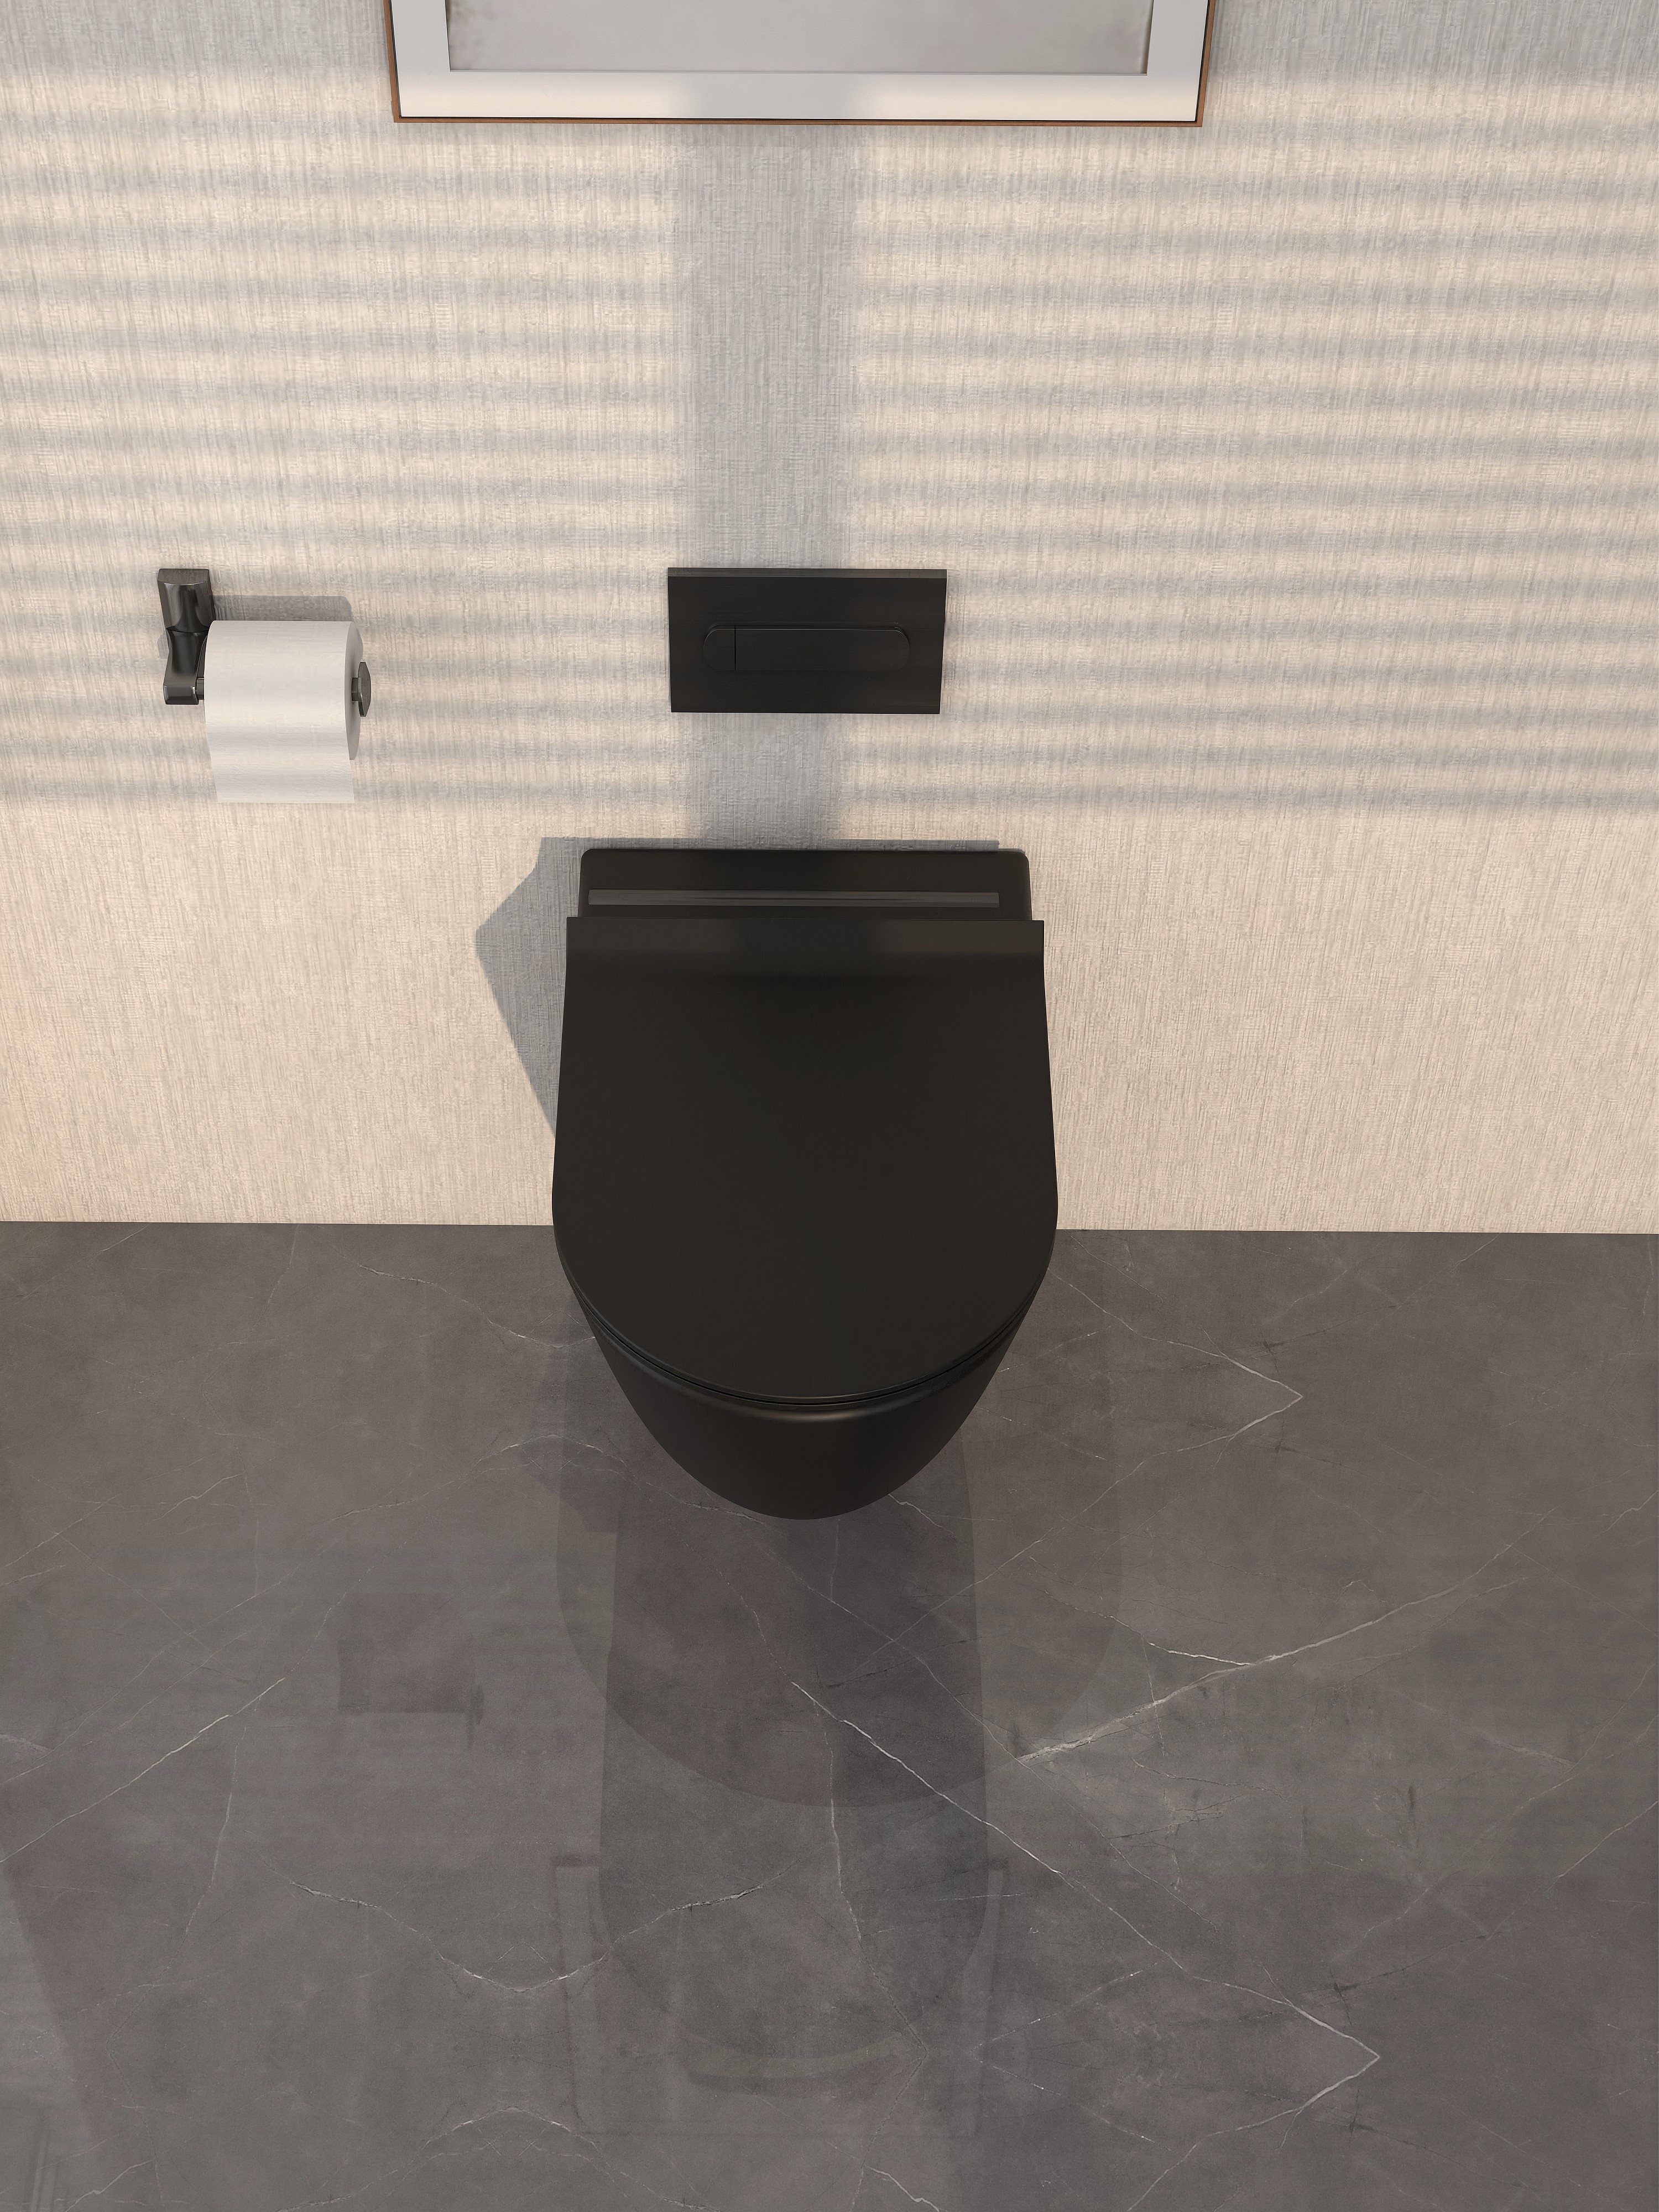 Vaso WC sospeso MEJE in ceramica a doppio scarico con sedile ammortizzato, nero opaco